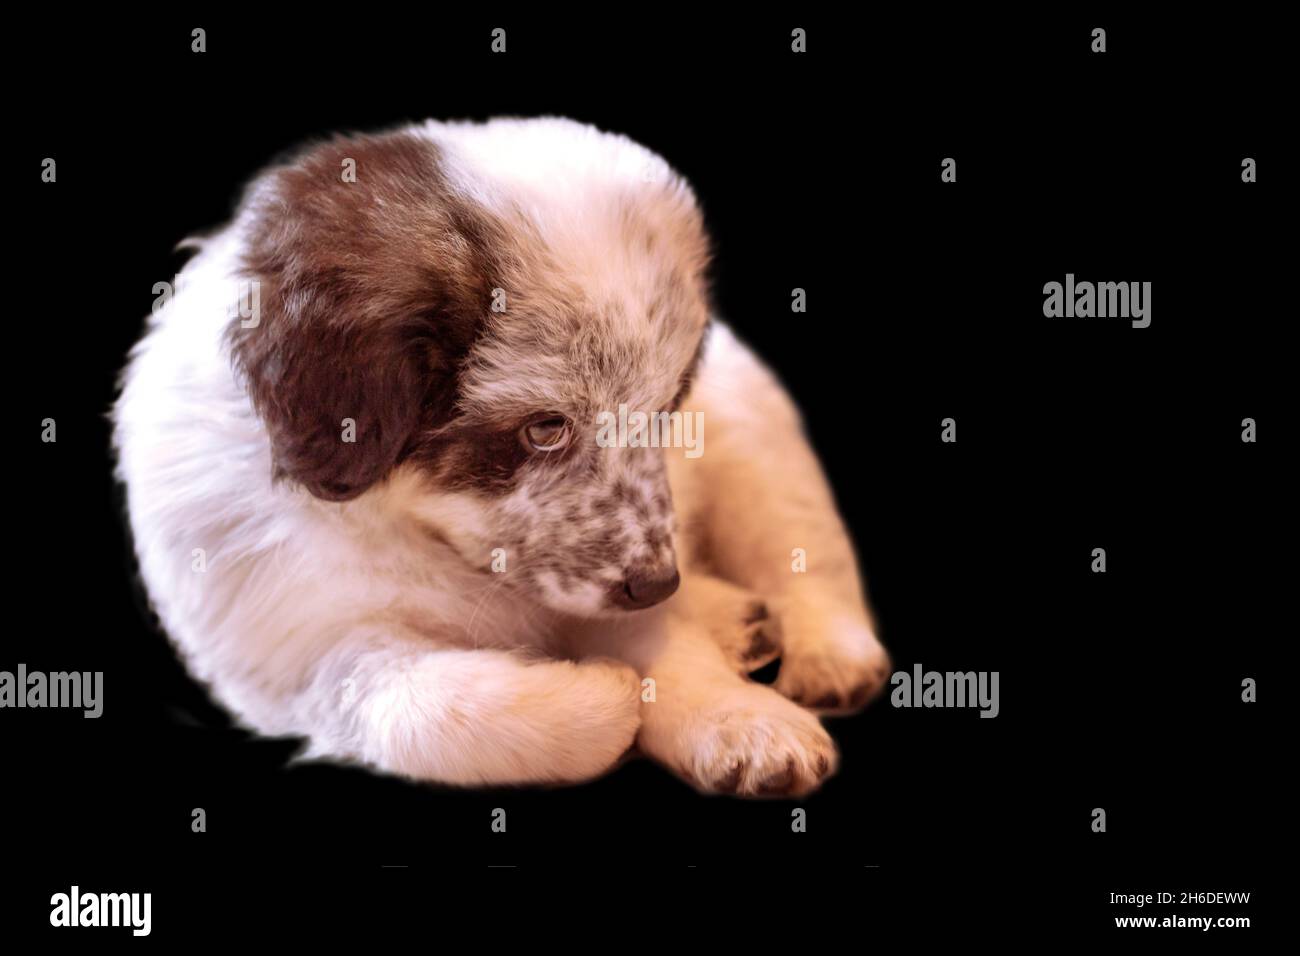 Shy Bulgarian shepherd puppy dog isolated on black background Stock Photo